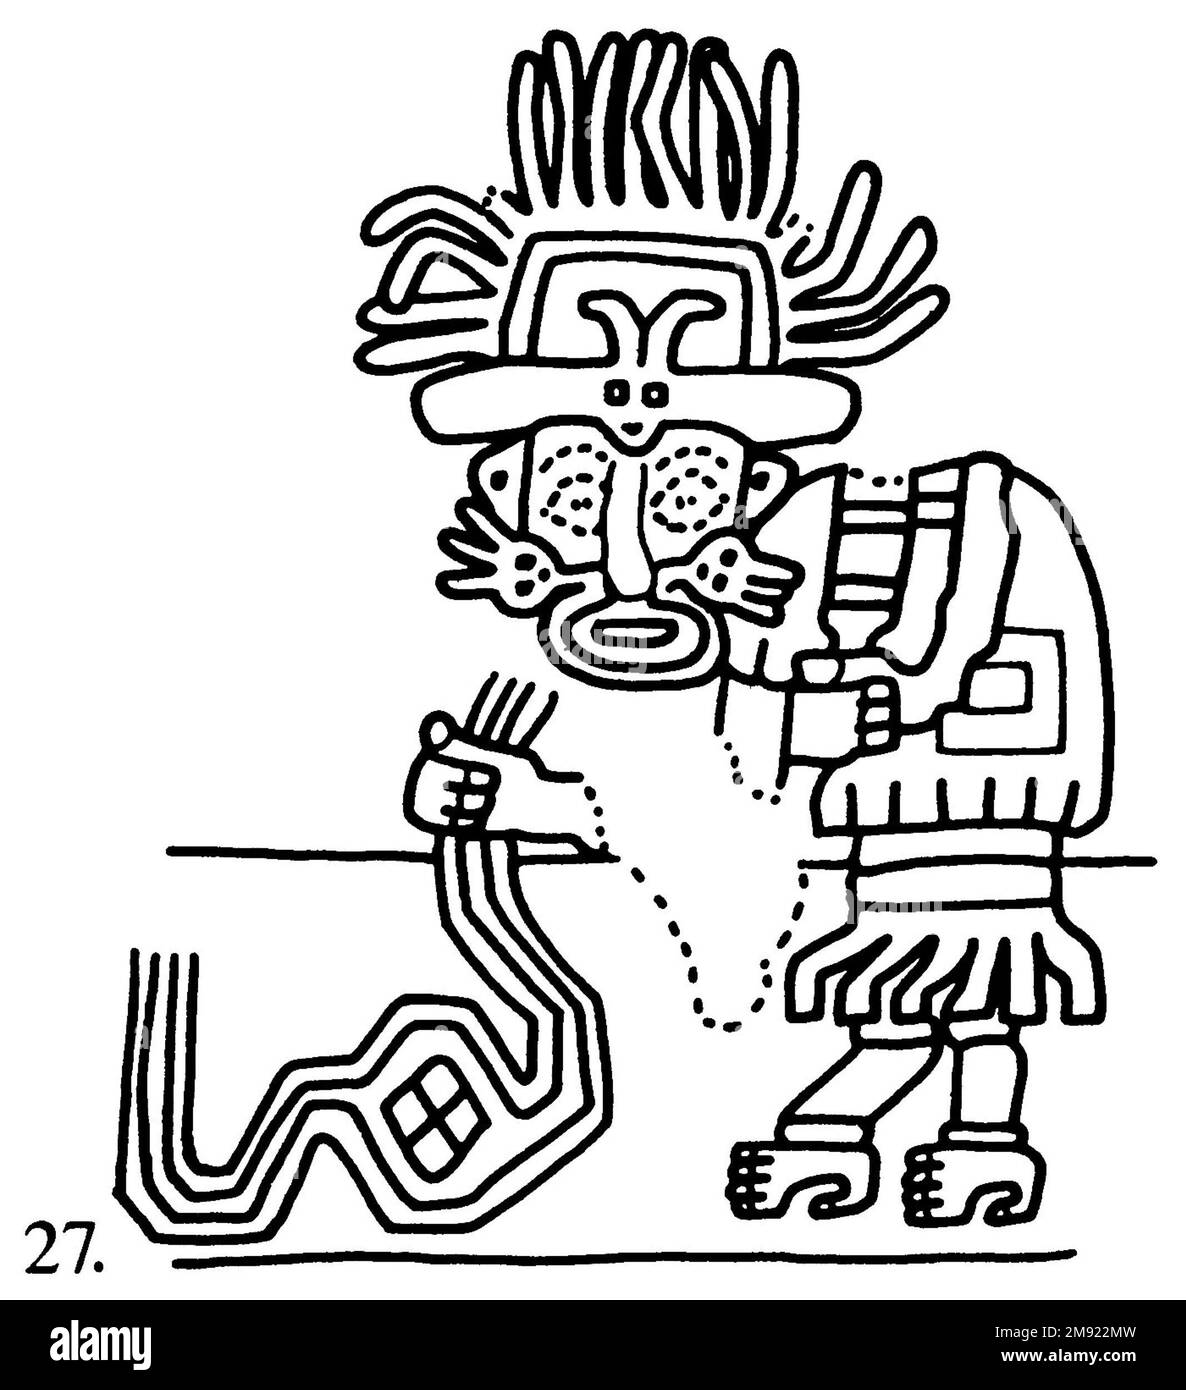 Manteau ('le textile Paracas') Nasca. Mantle ('The Paracas textile'), 100-300 C.E. Coton, fibre camélide, 24 5/8 × 58 11/16 po. (62,5 × 149 cm). Ce manteau extraordinairement complexe, ou manteau, est l'un des textiles andins les plus renommés au monde. Il a probablement été utilisé comme objet de cérémonie. Les quatre-vingt-dix personnages qui décorent la frontière, créés par le tricotage à l’aiguille, ont été interprétés comme un microcosme de vie sur la côte sud du Pérou il y a deux mille ans, avec un accent particulier sur l’agriculture. Bon nombre des images illustrent la flore et la faune indigènes ainsi que les plantes cultivées. Personnages costumés Banque D'Images